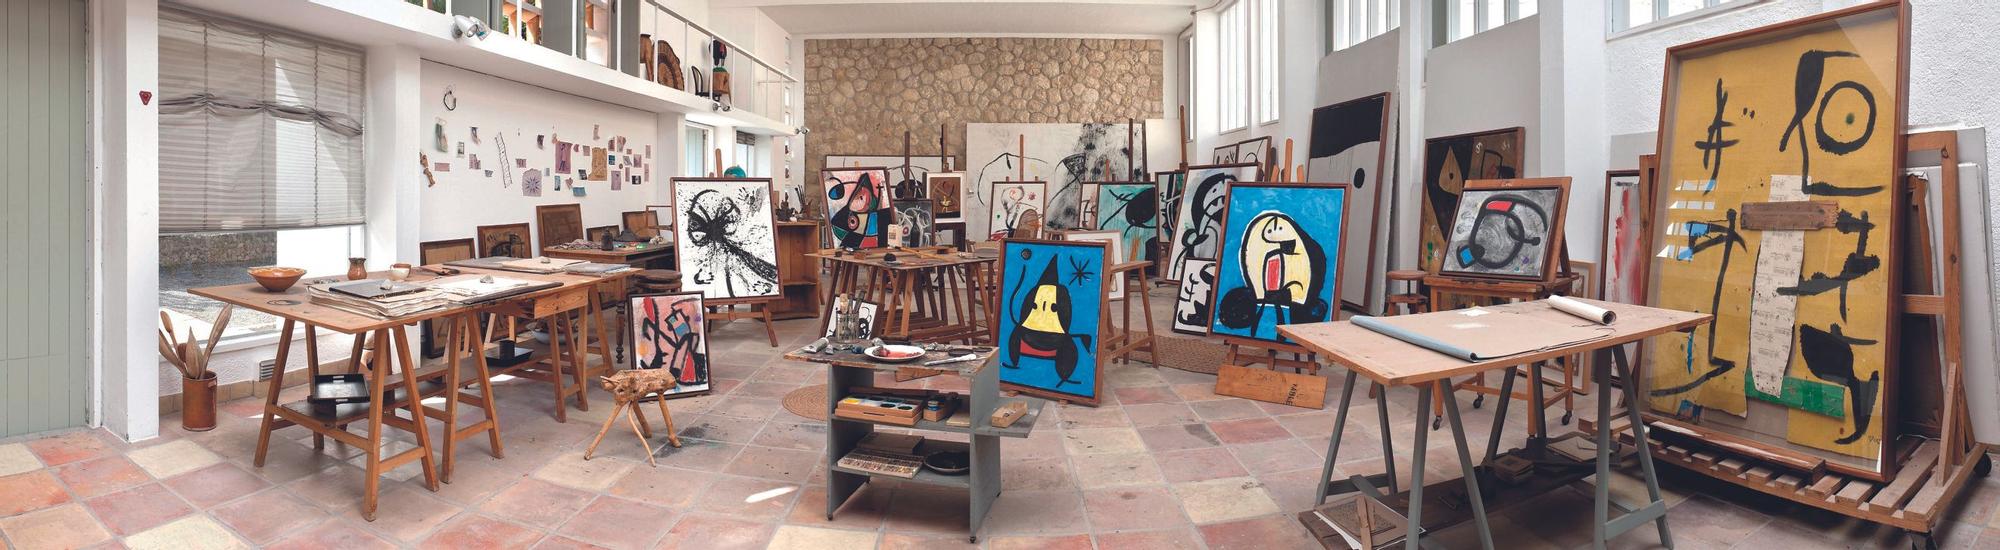 Immer wieder einen Besuch wert: Die Fundació Miró.